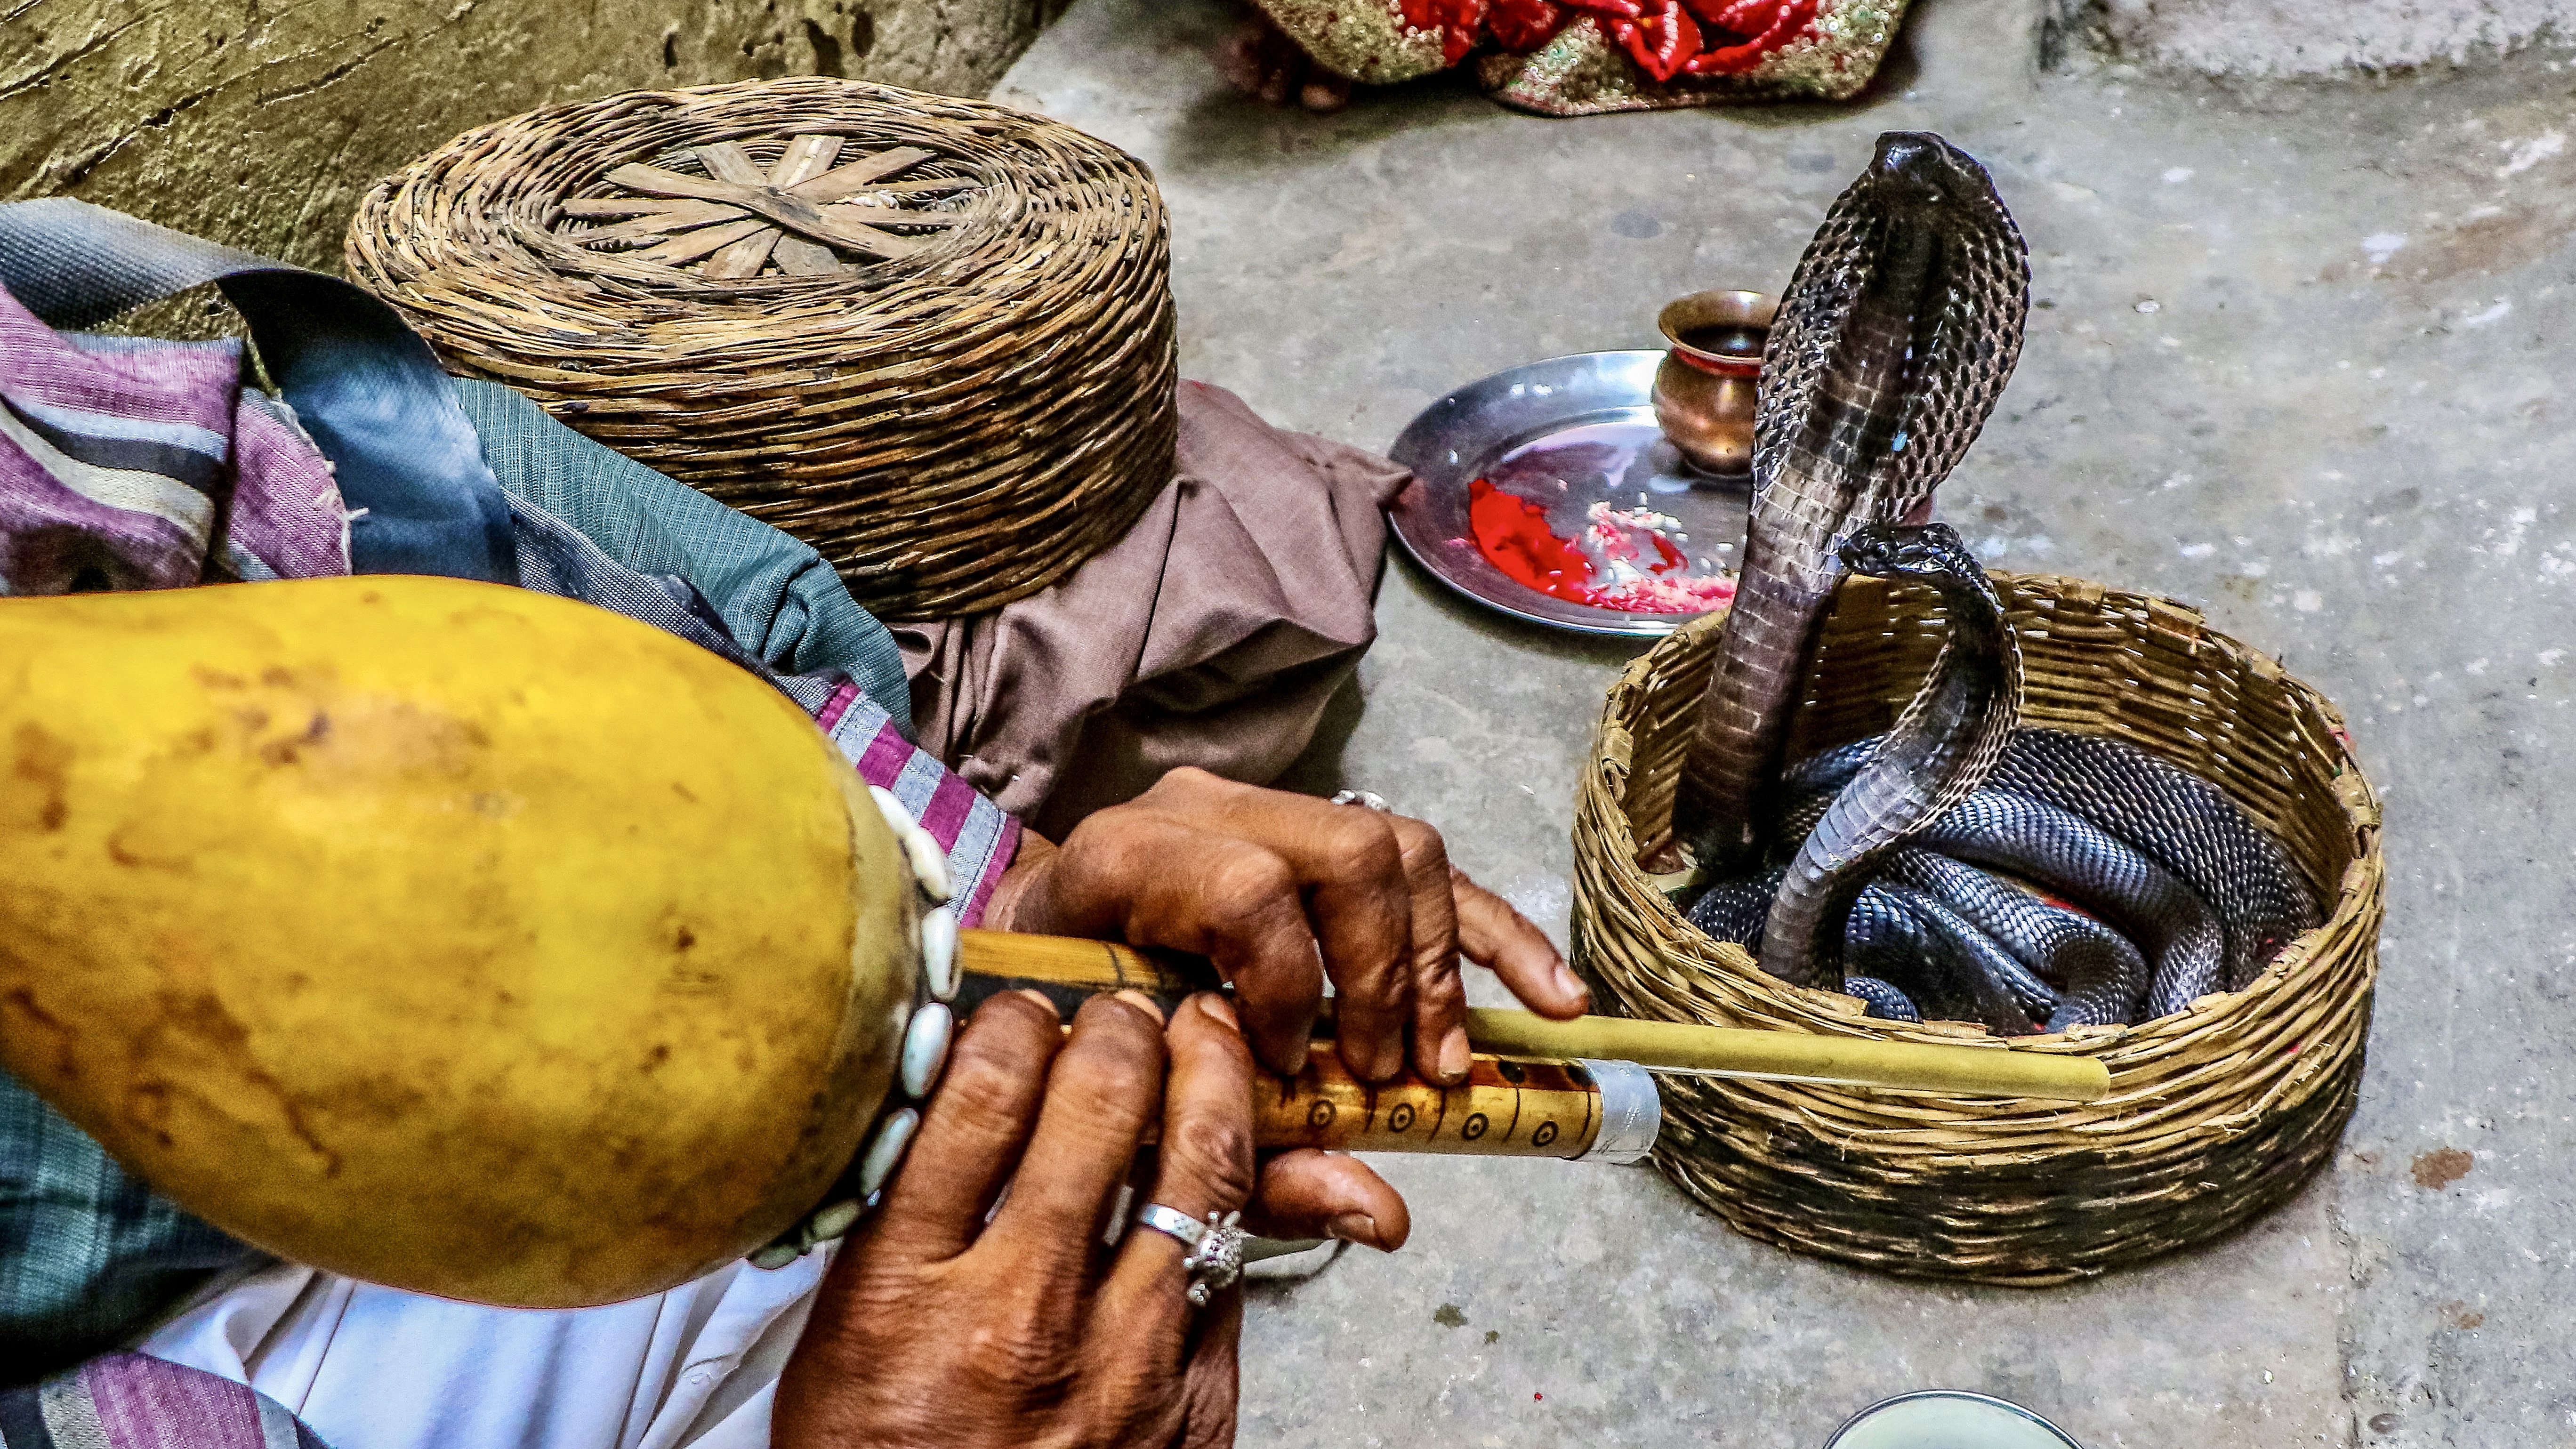 Egy kígyóbűvölő művész alkotás közben az indiai Rajasthanban.